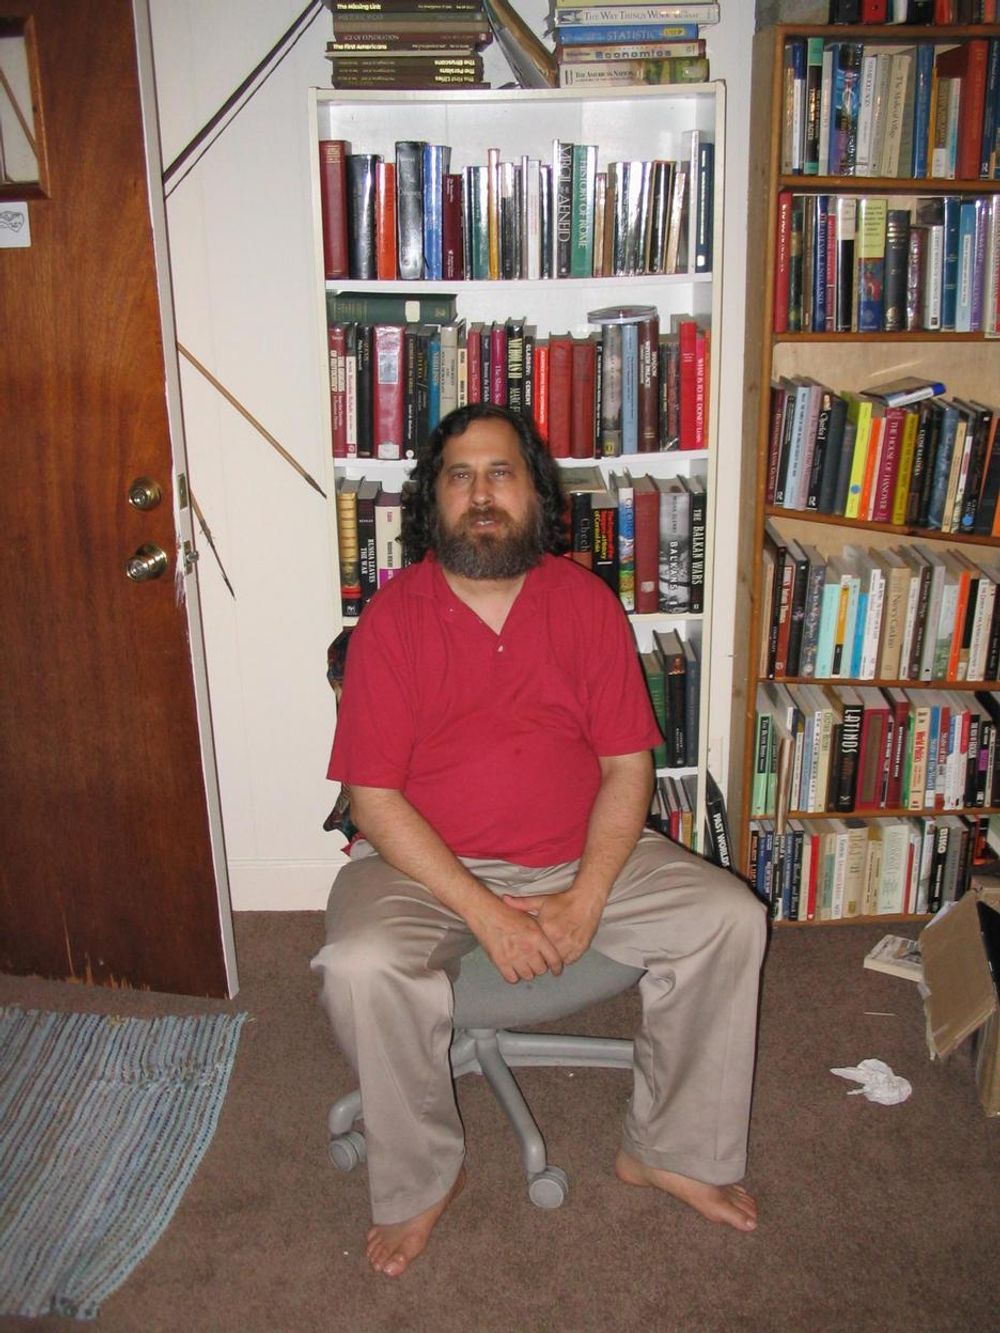 Richard Stallman er leder av Free Software Foundation, og en sentral innen IT-bransjen generelt og friprog-miljøet spesielt.